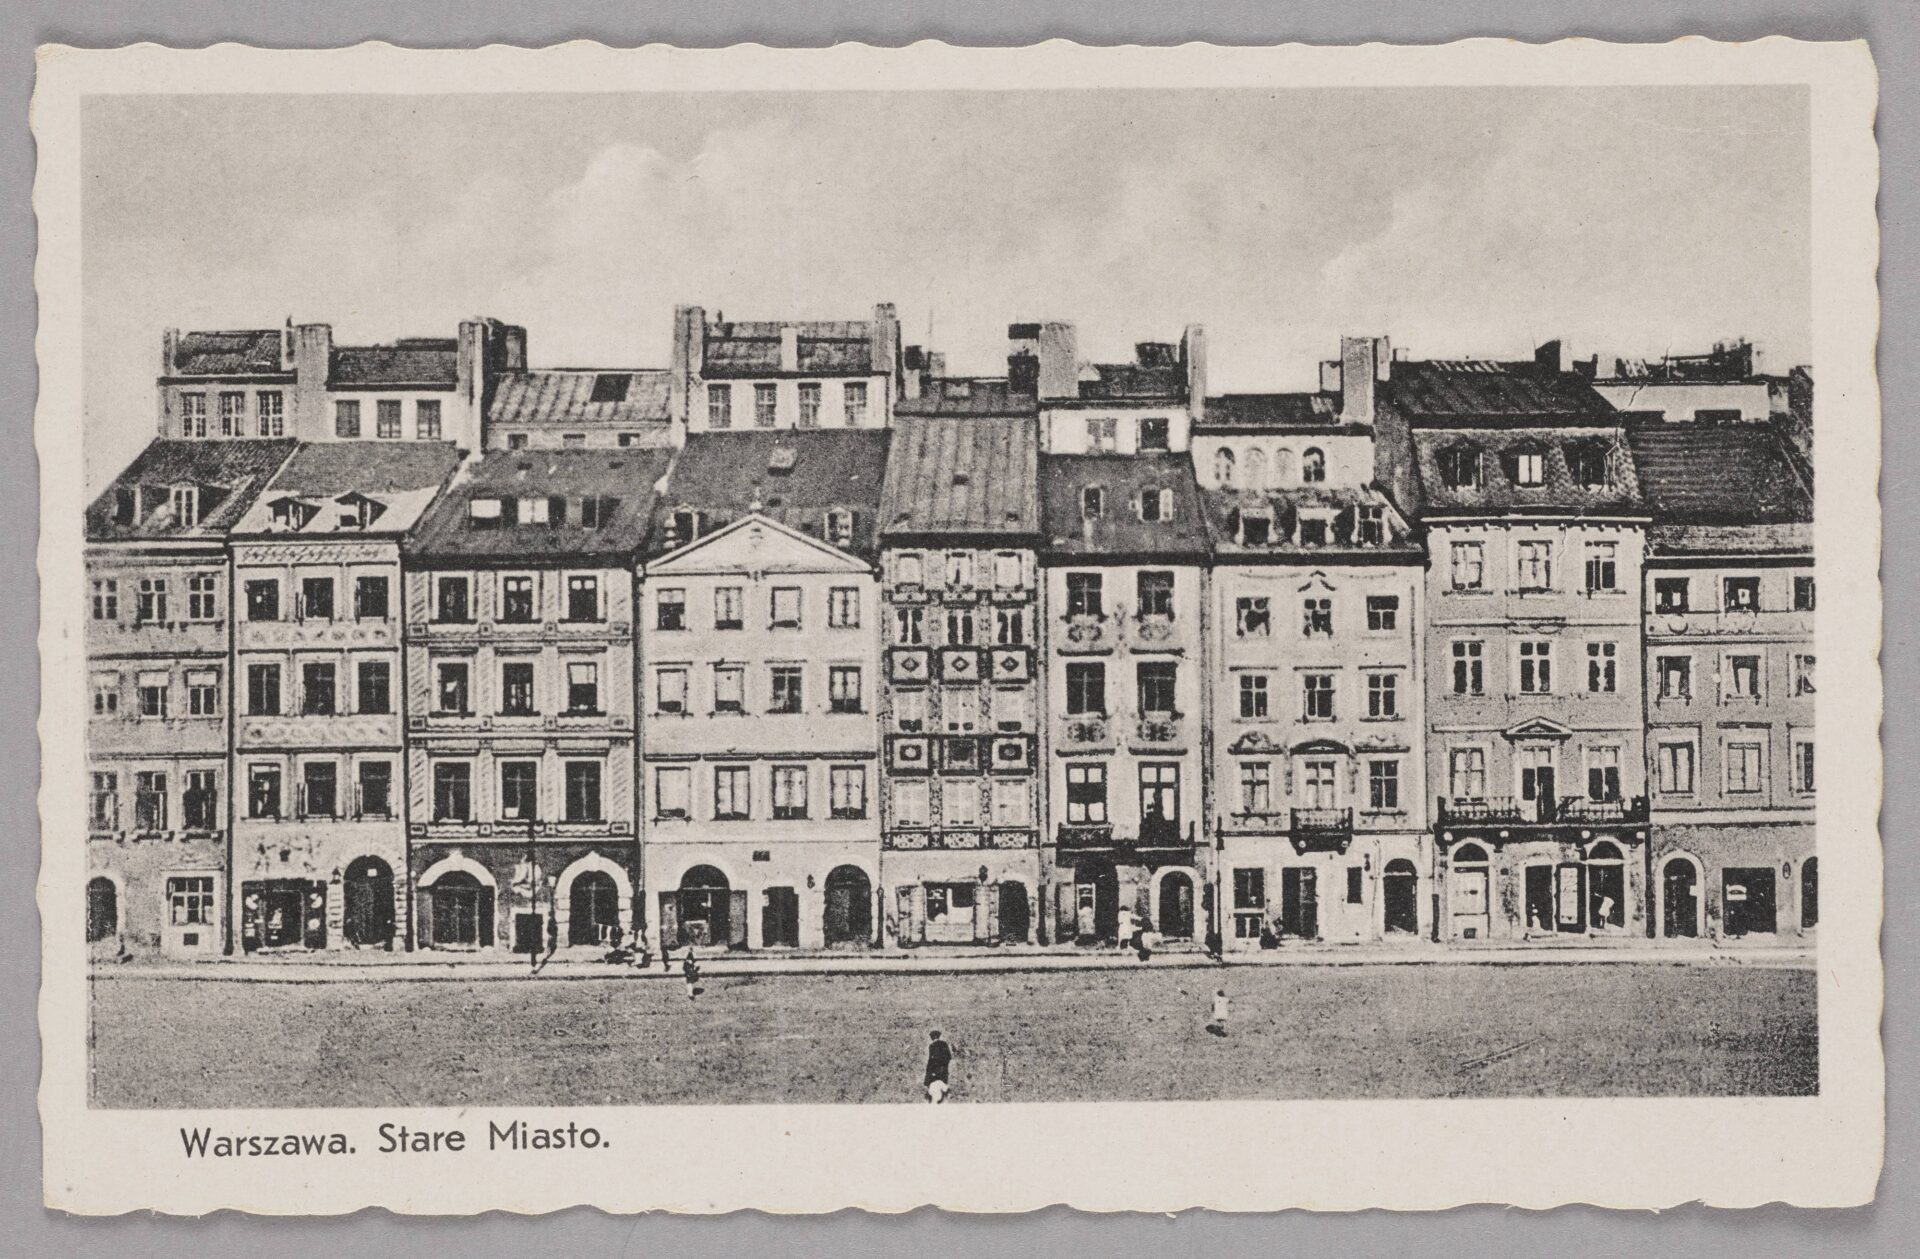 Rynek Starego Miasta - Strona Barssa, ok. 1938, zbiory Muzeum Warszawy